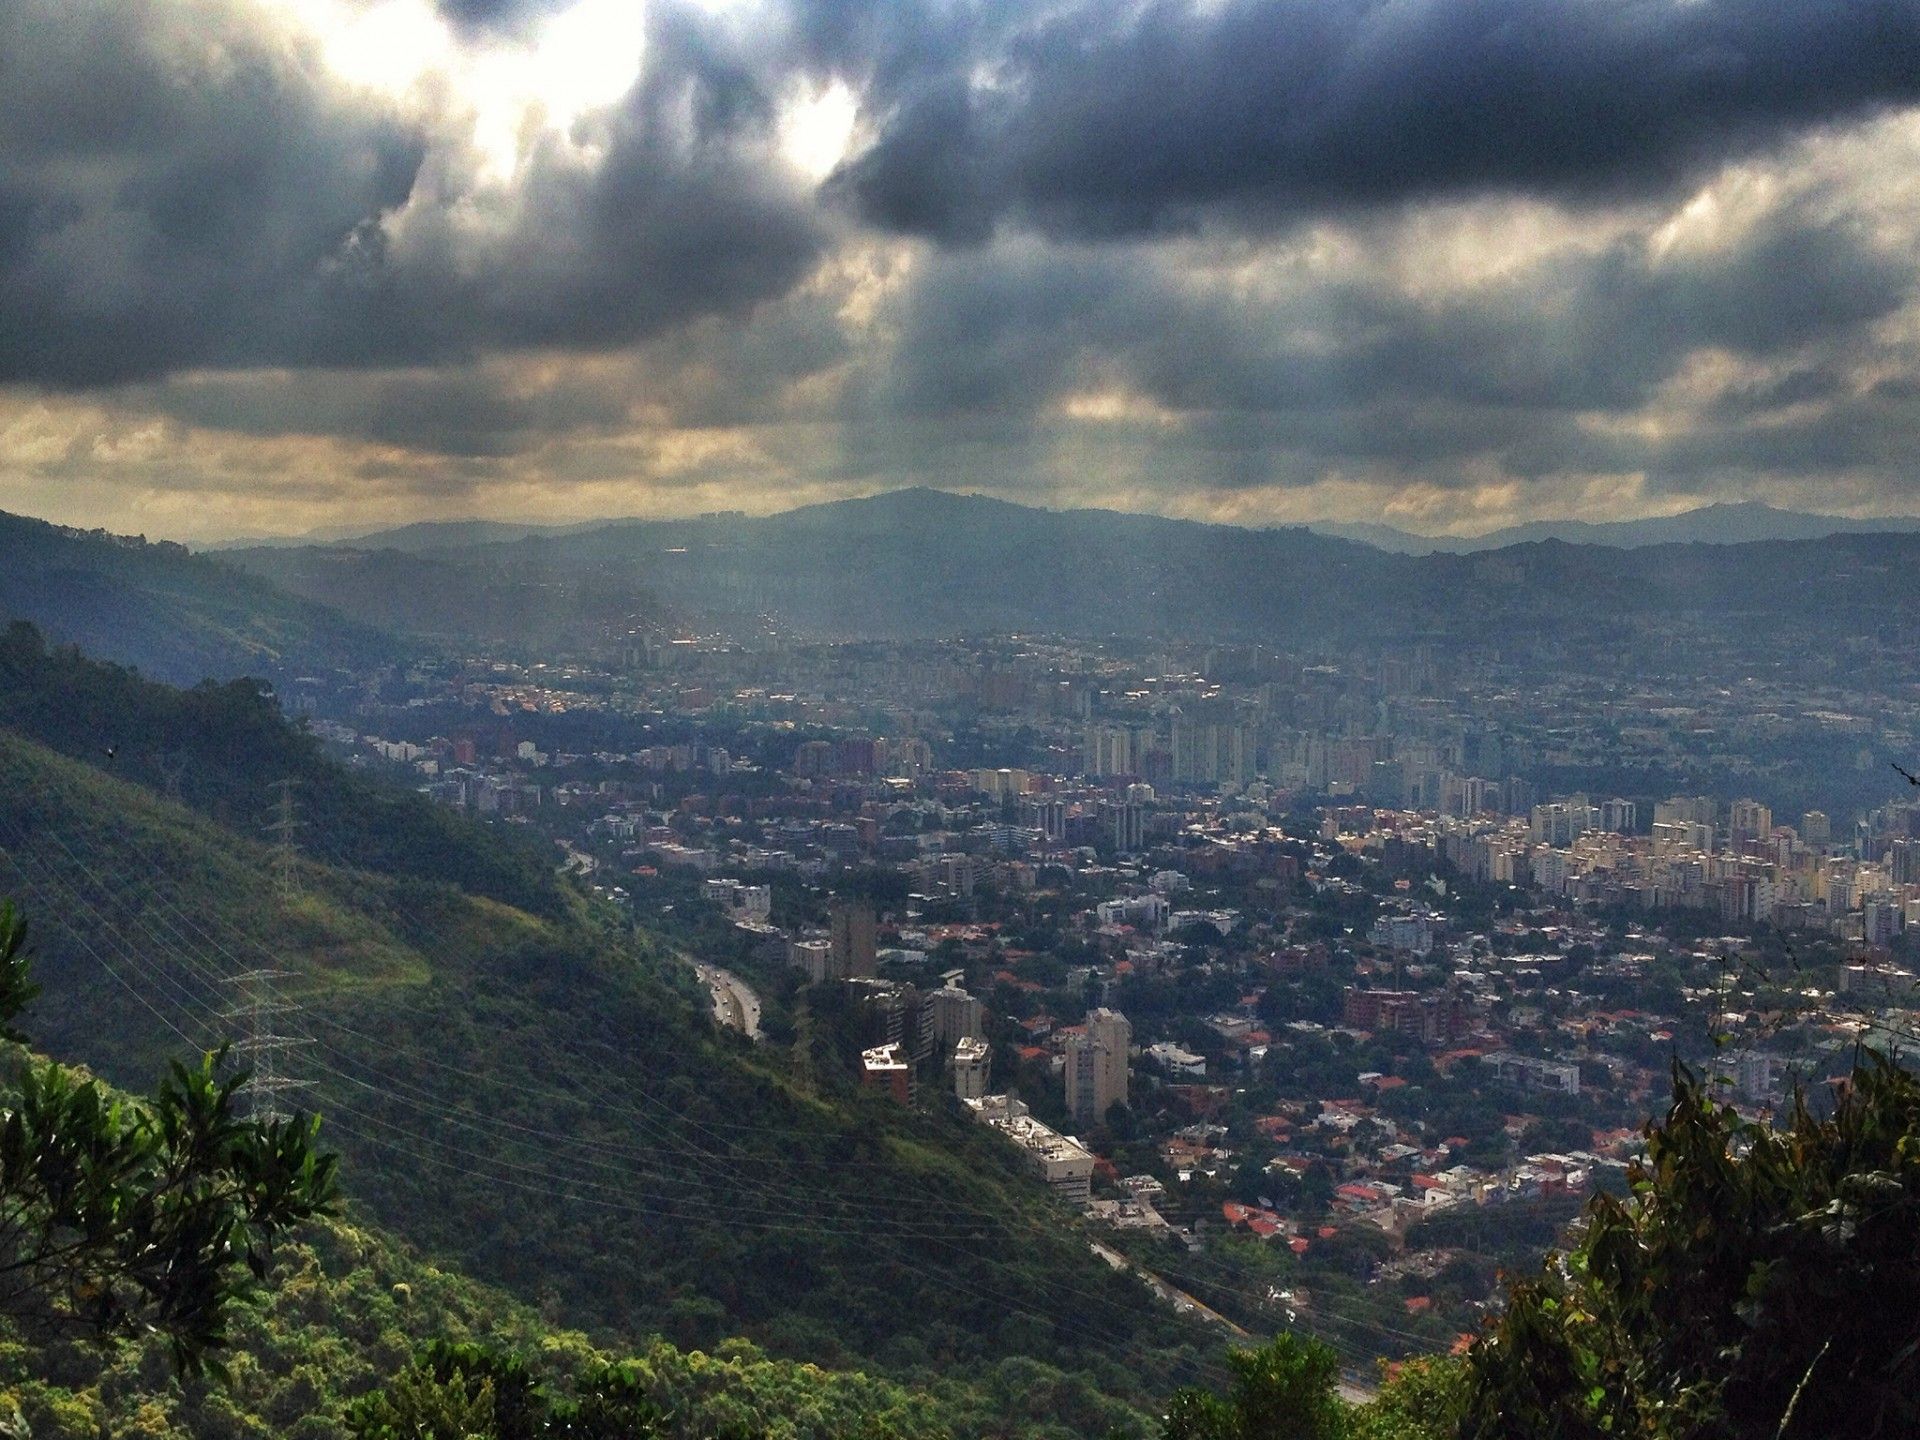 Fot. Caracas, stolica Wenezueli. Fot. Juan Cristobal Zulueta/Flickr.com